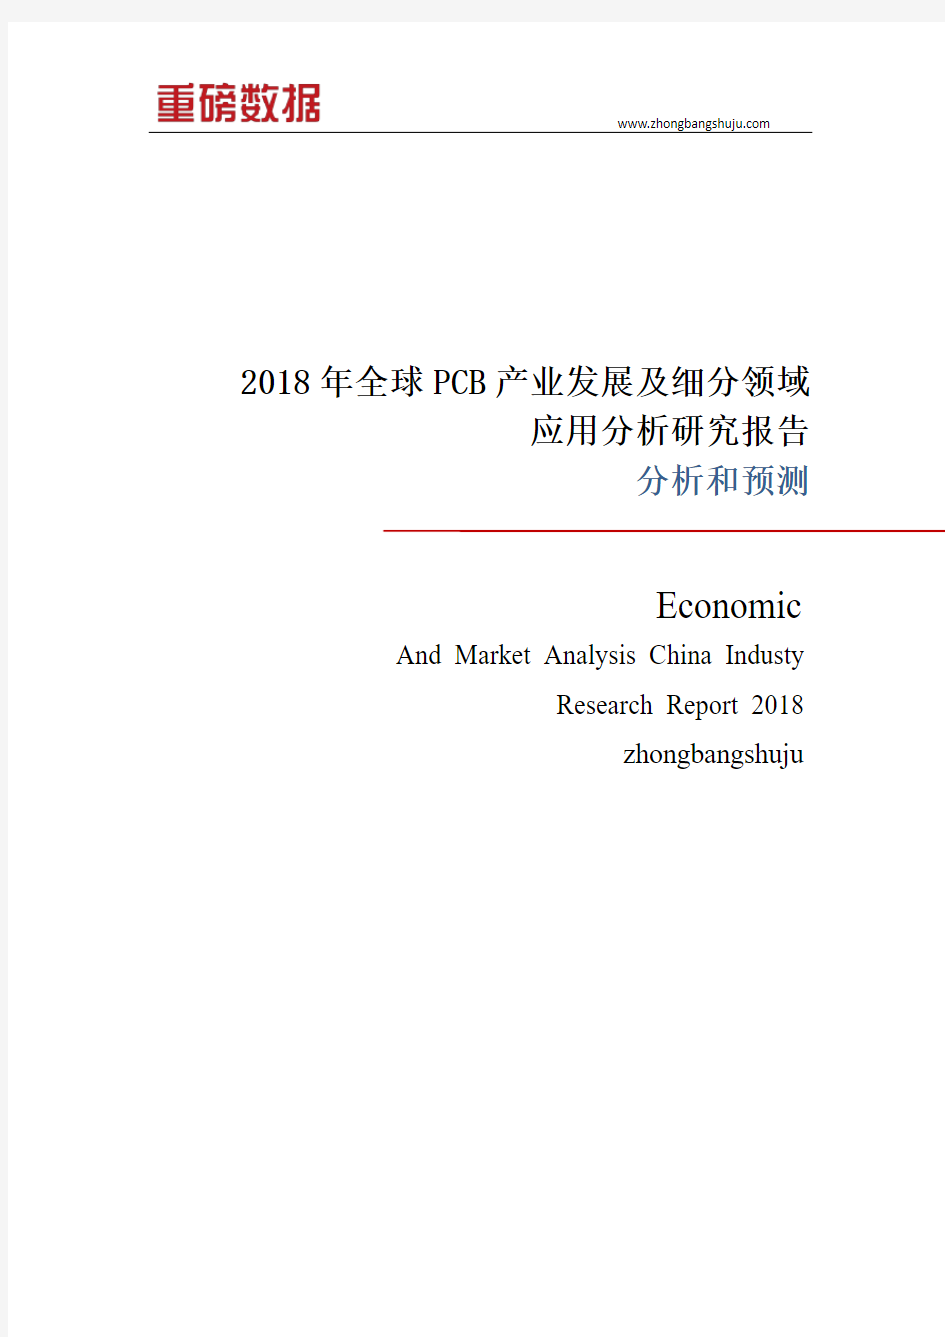 2018年全球PCB产业发展及细分领域应用分析研究报告